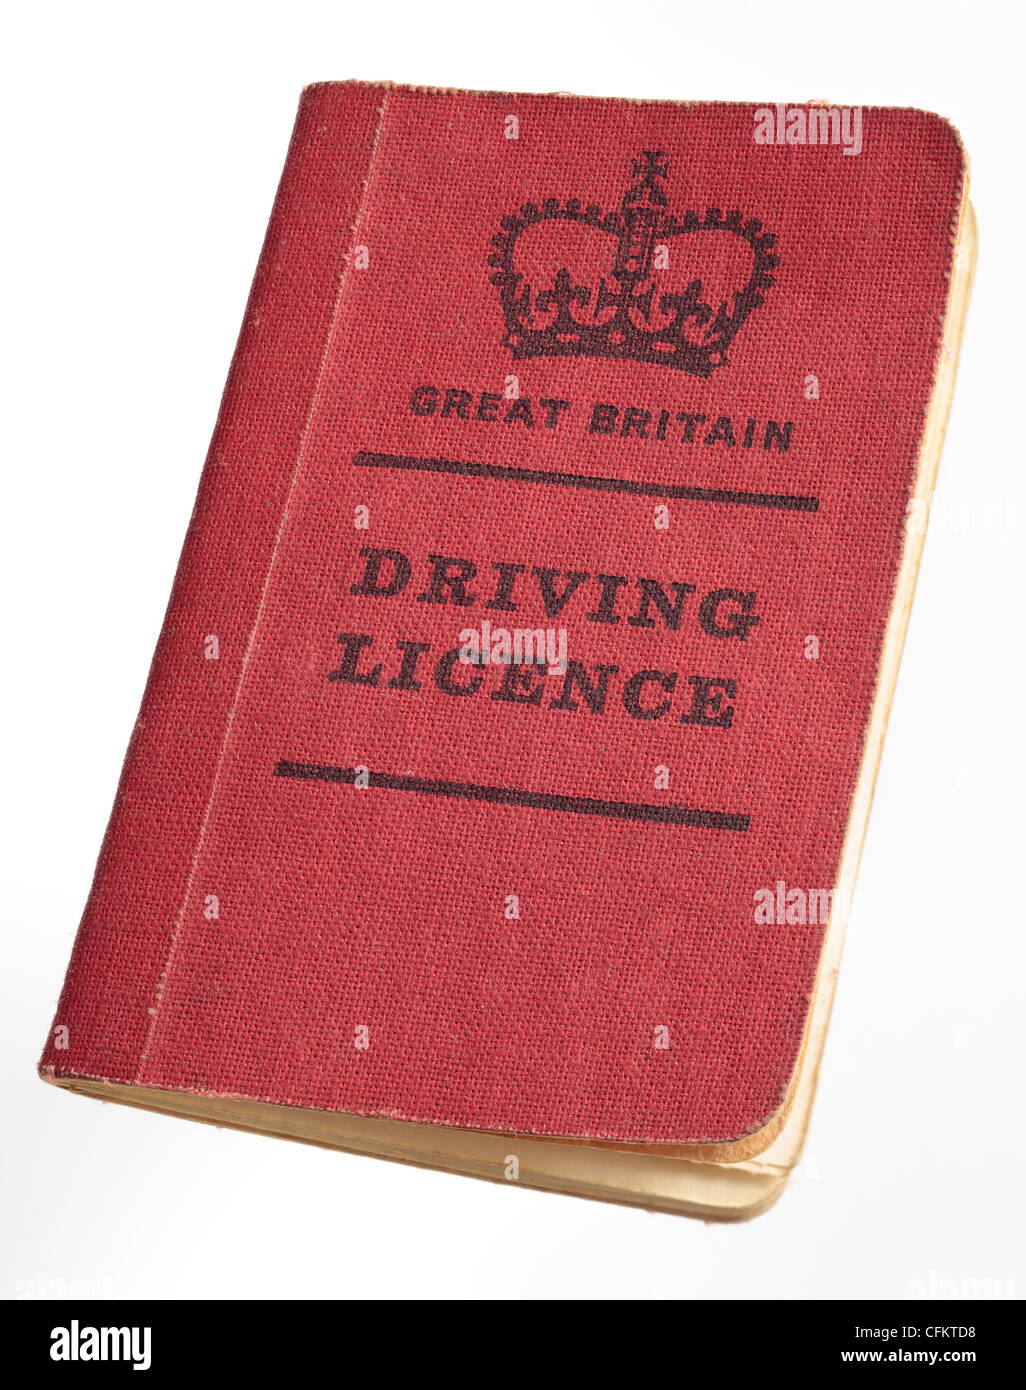 Couverture rouge de style ancien permis de conduire britannique à la fin des années 60 Banque D'Images